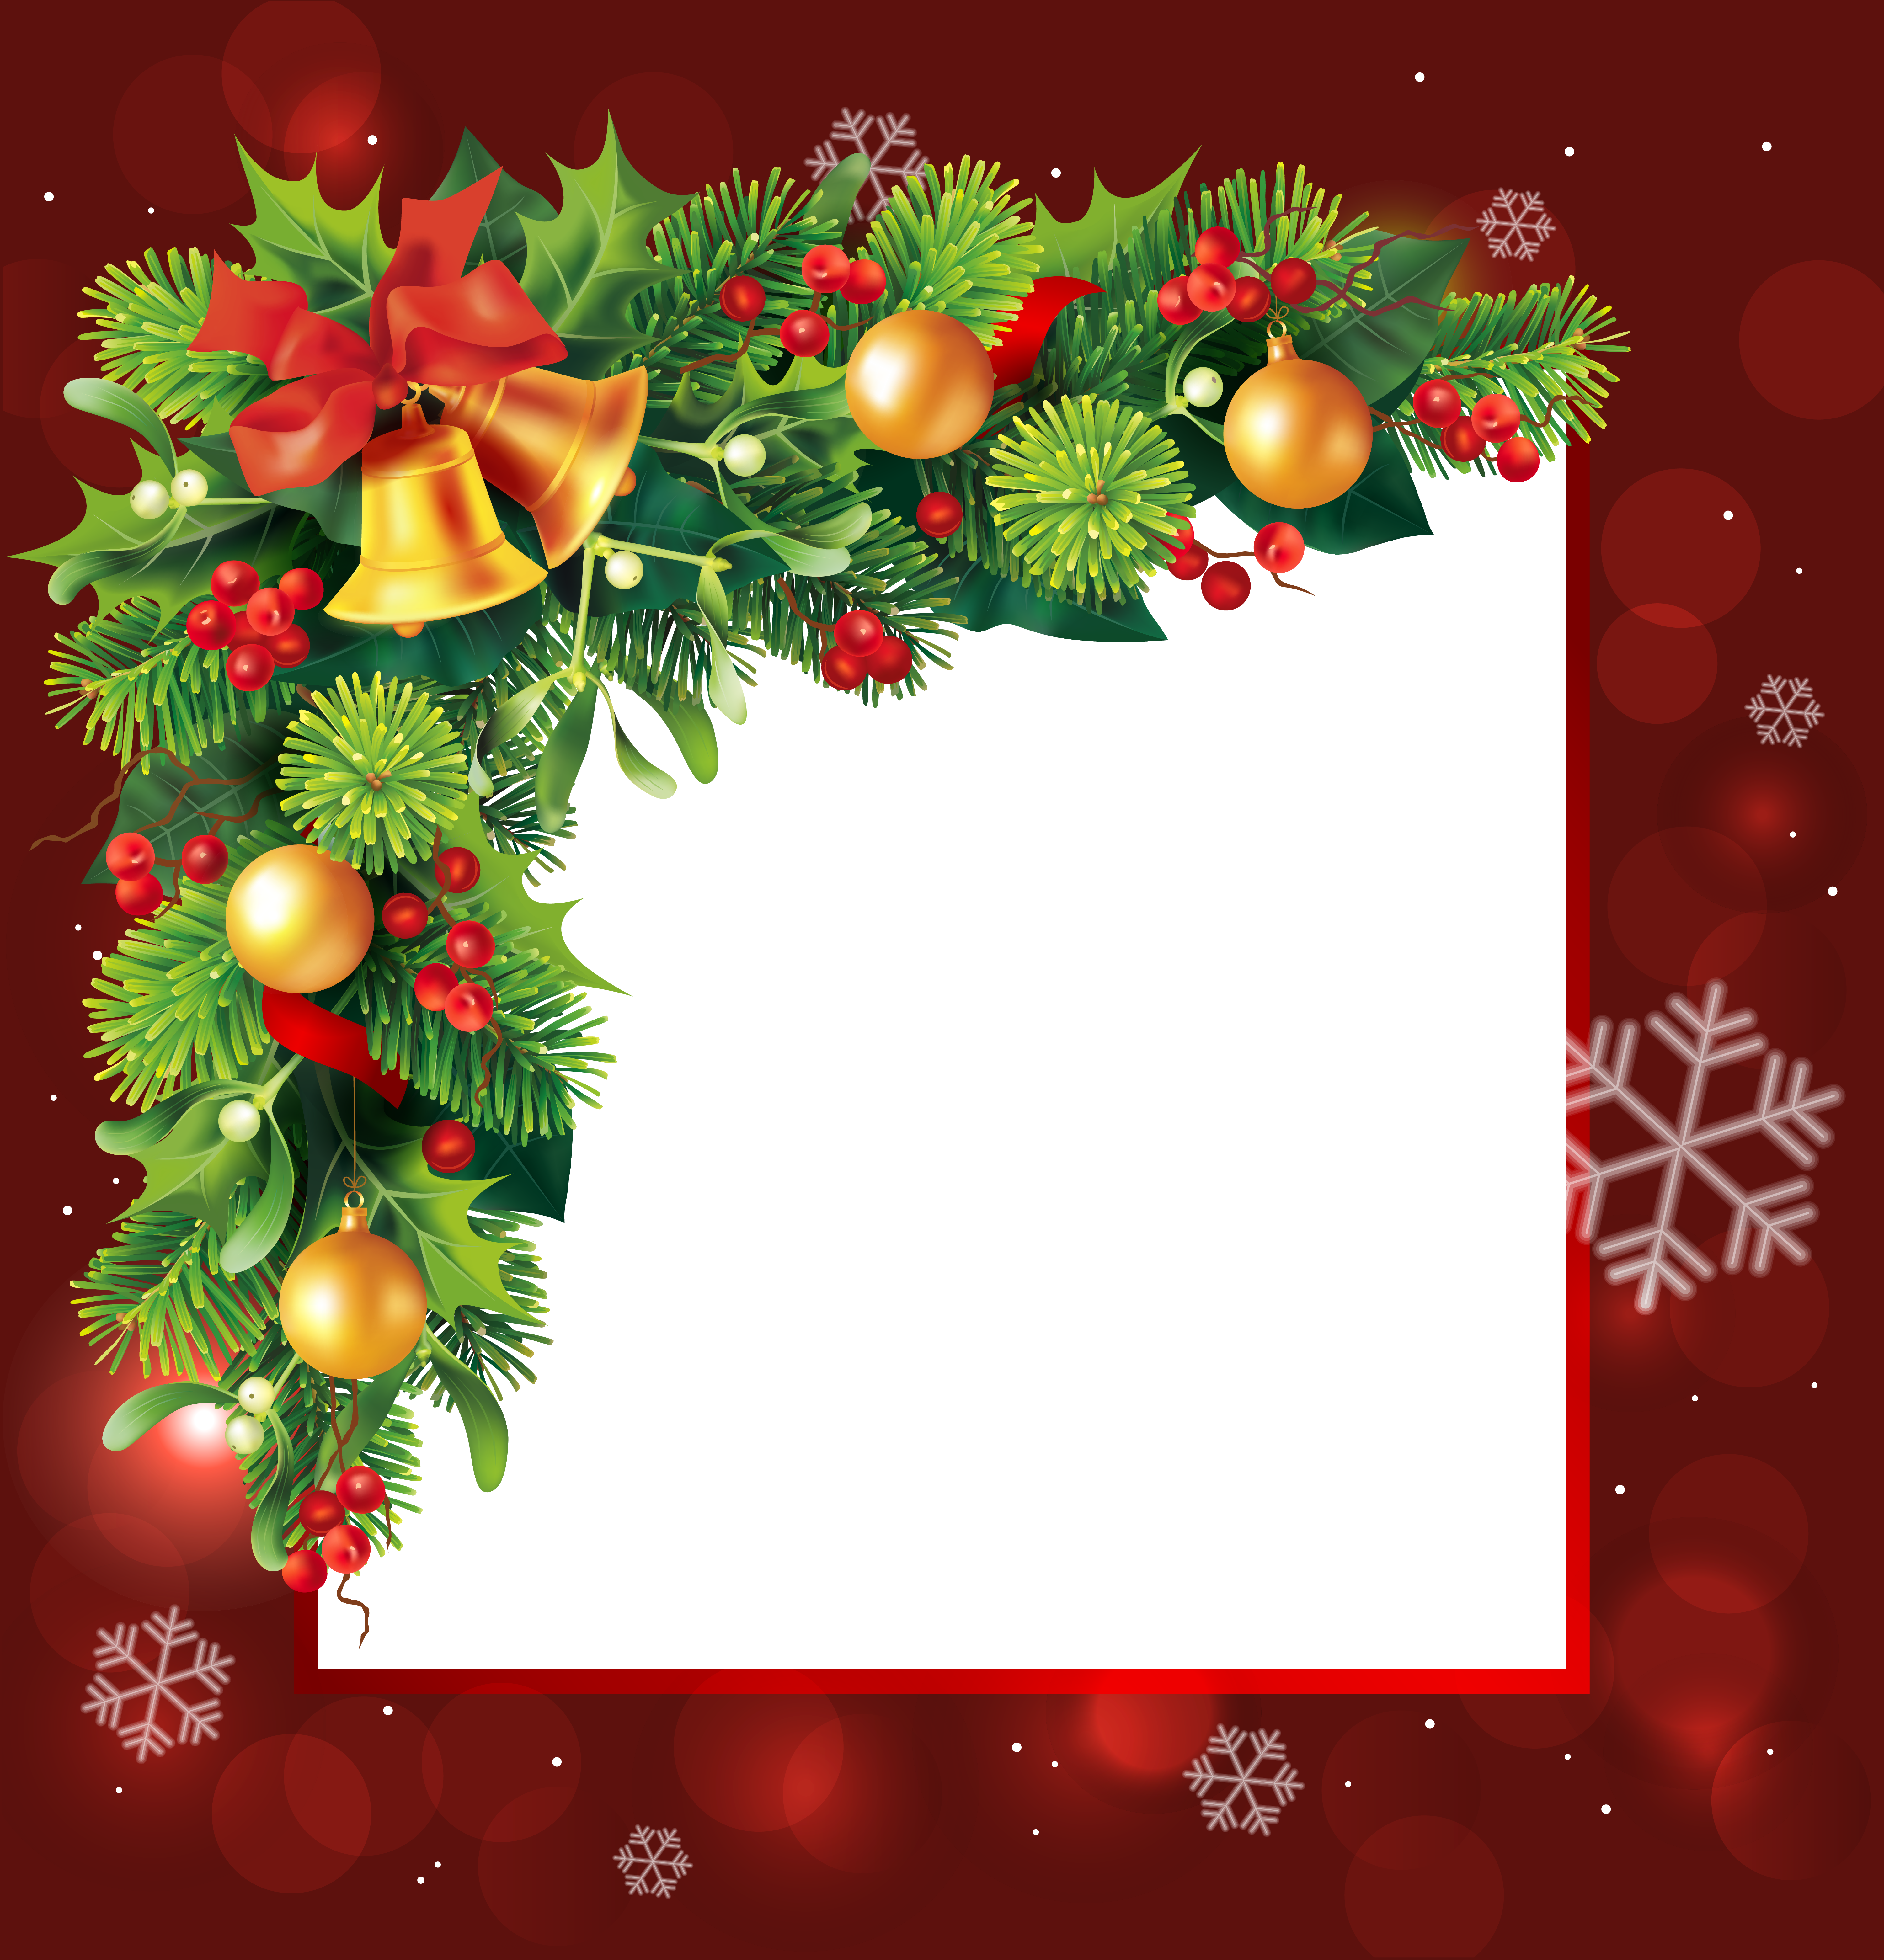 Christmas Greetings Frames - Christmas Borders And Frames (6005x6248)